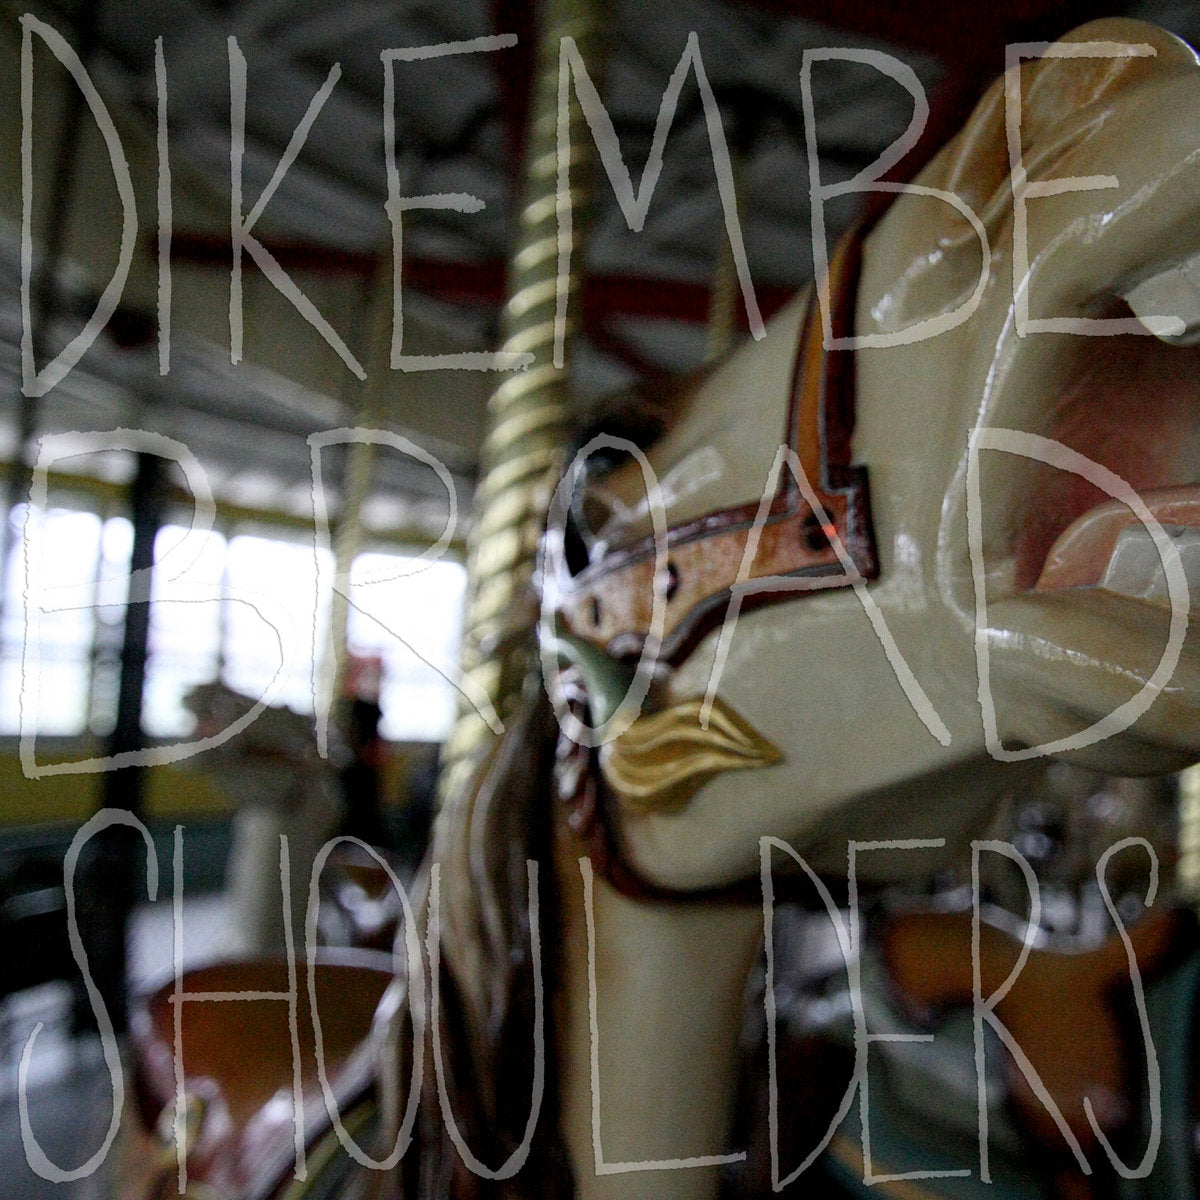 Dikembe - Broad Shoulders